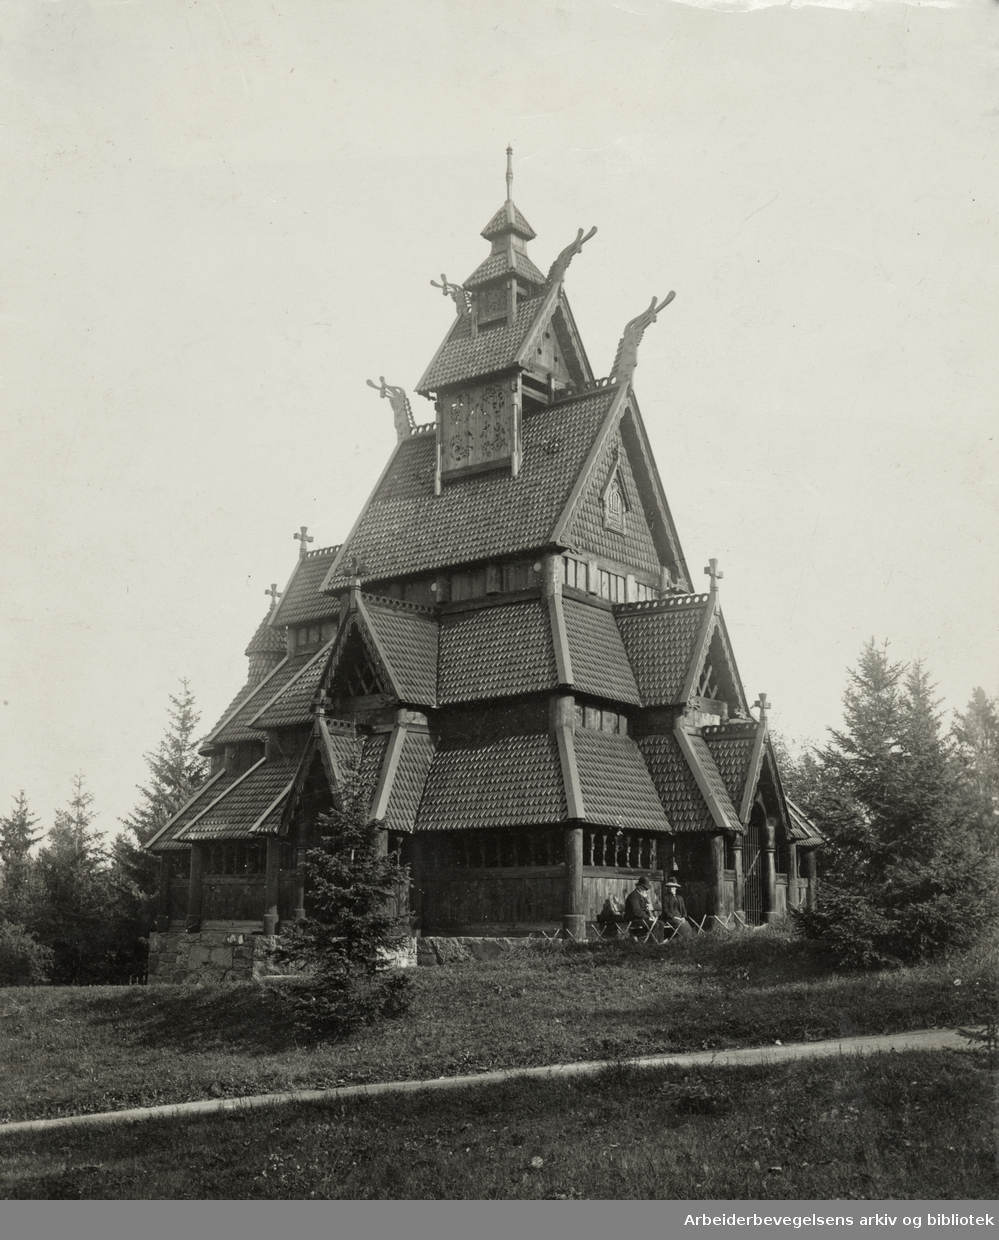 Bygdøy Folkemuseum. Gol stavkirke ble gjenreist ved museet i 1880-årene. Tid ukjent